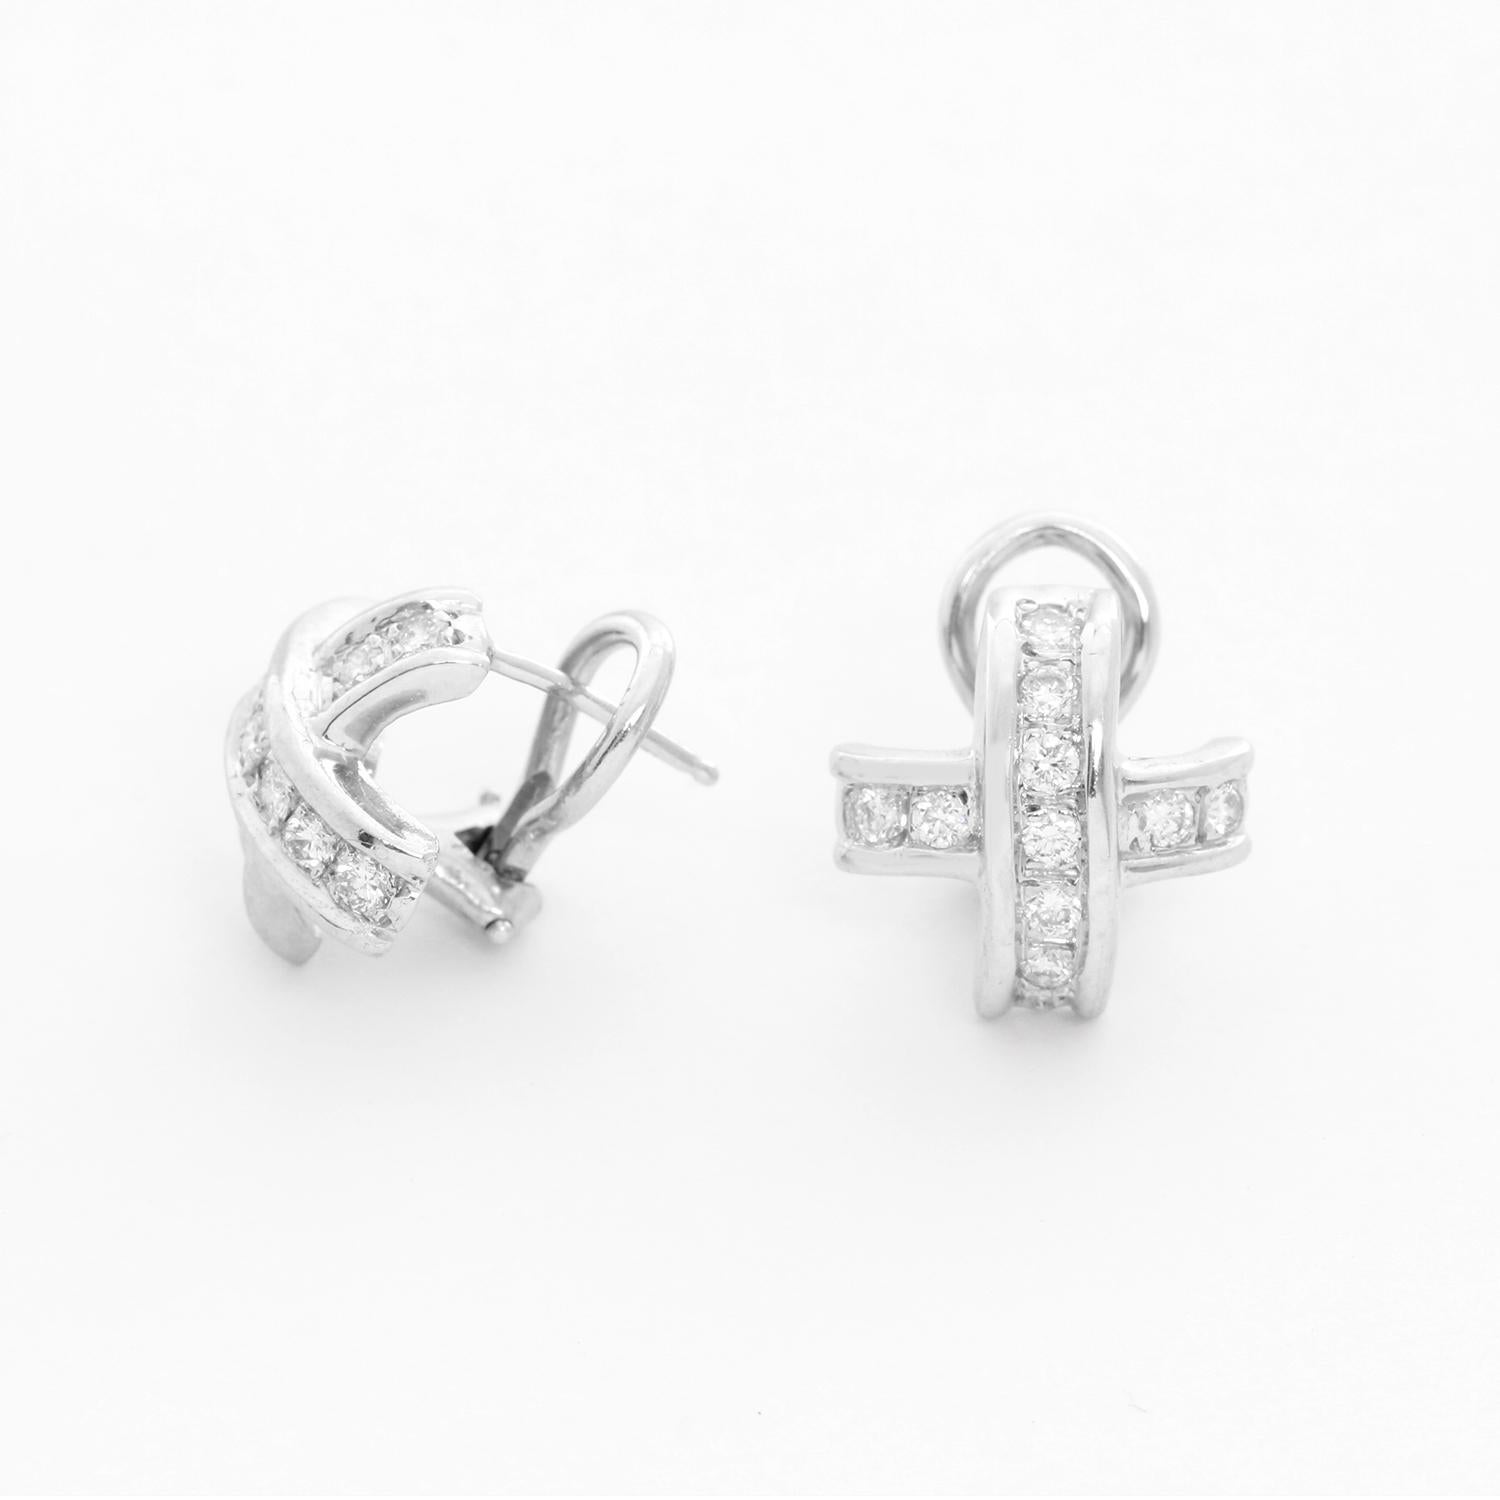 18K White Gold Diamond Cross Earrings - 18K White Gold Kreuz Ohrringe mit 11 Diamanten in jedem Ohrring.  Mit Hebelrückseite. Gesamtlänge 13 mm. Gesamtgewicht 6.7 Gramm. 